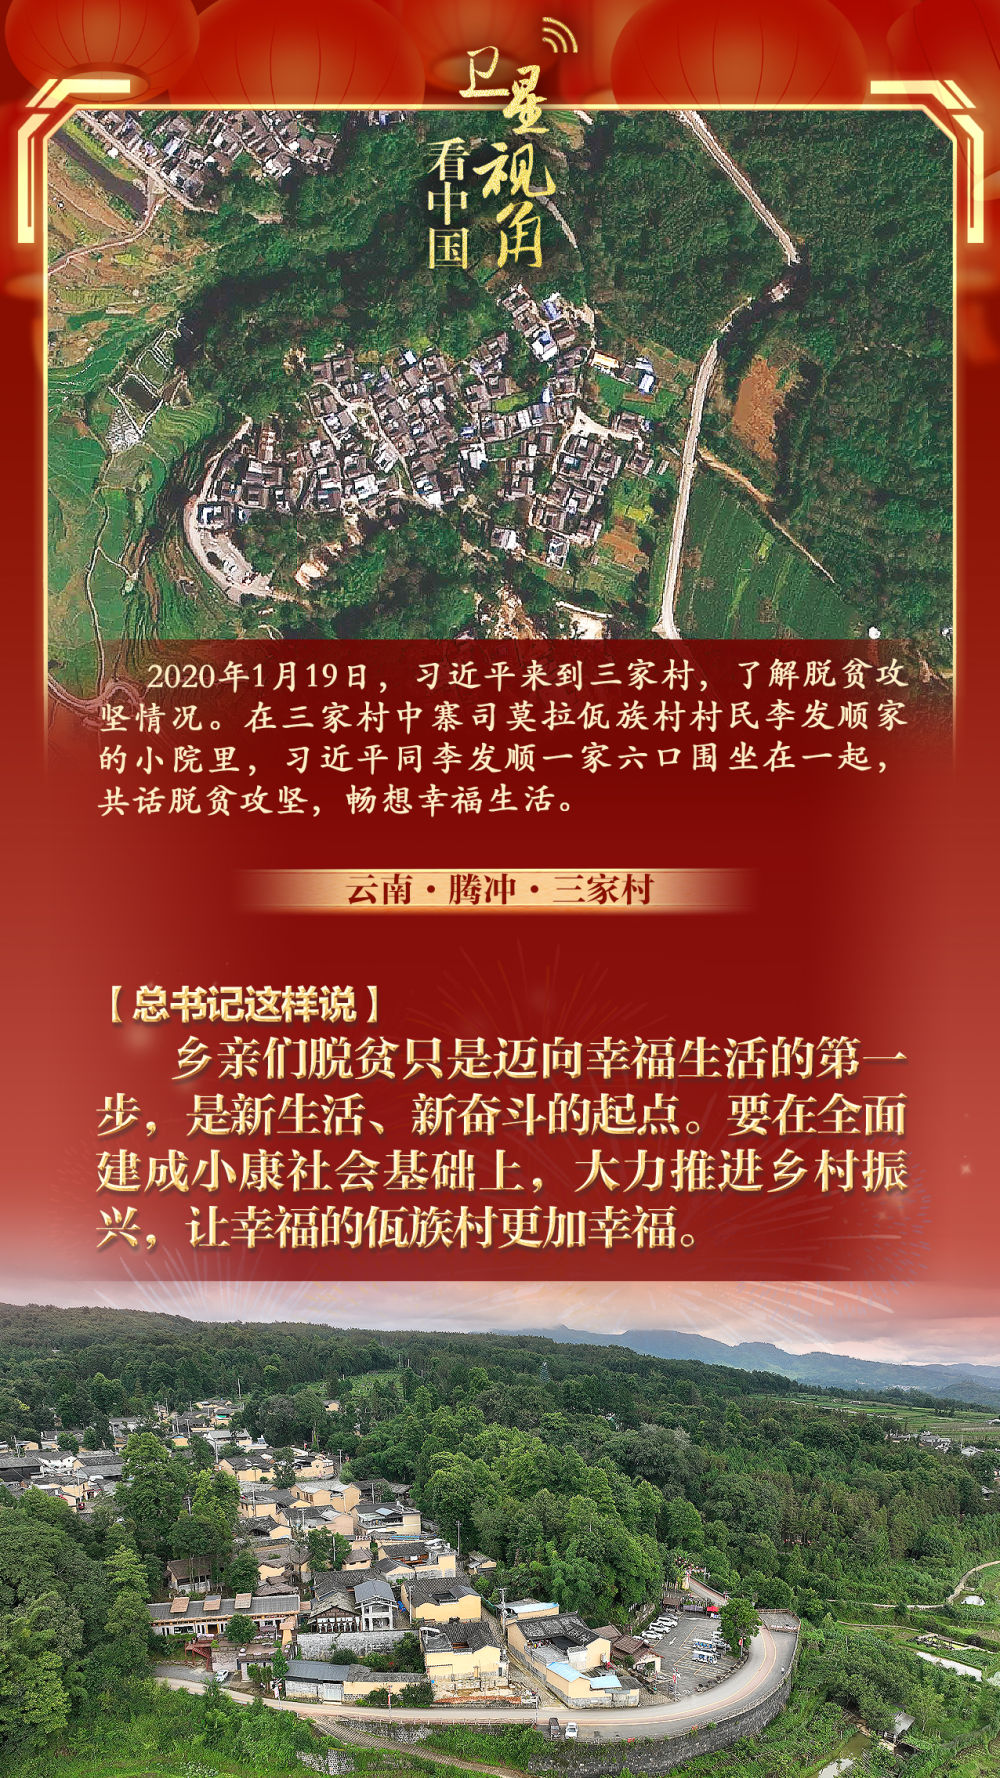 卫星视角看中国丨总书记春节前夕考察的那些乡村